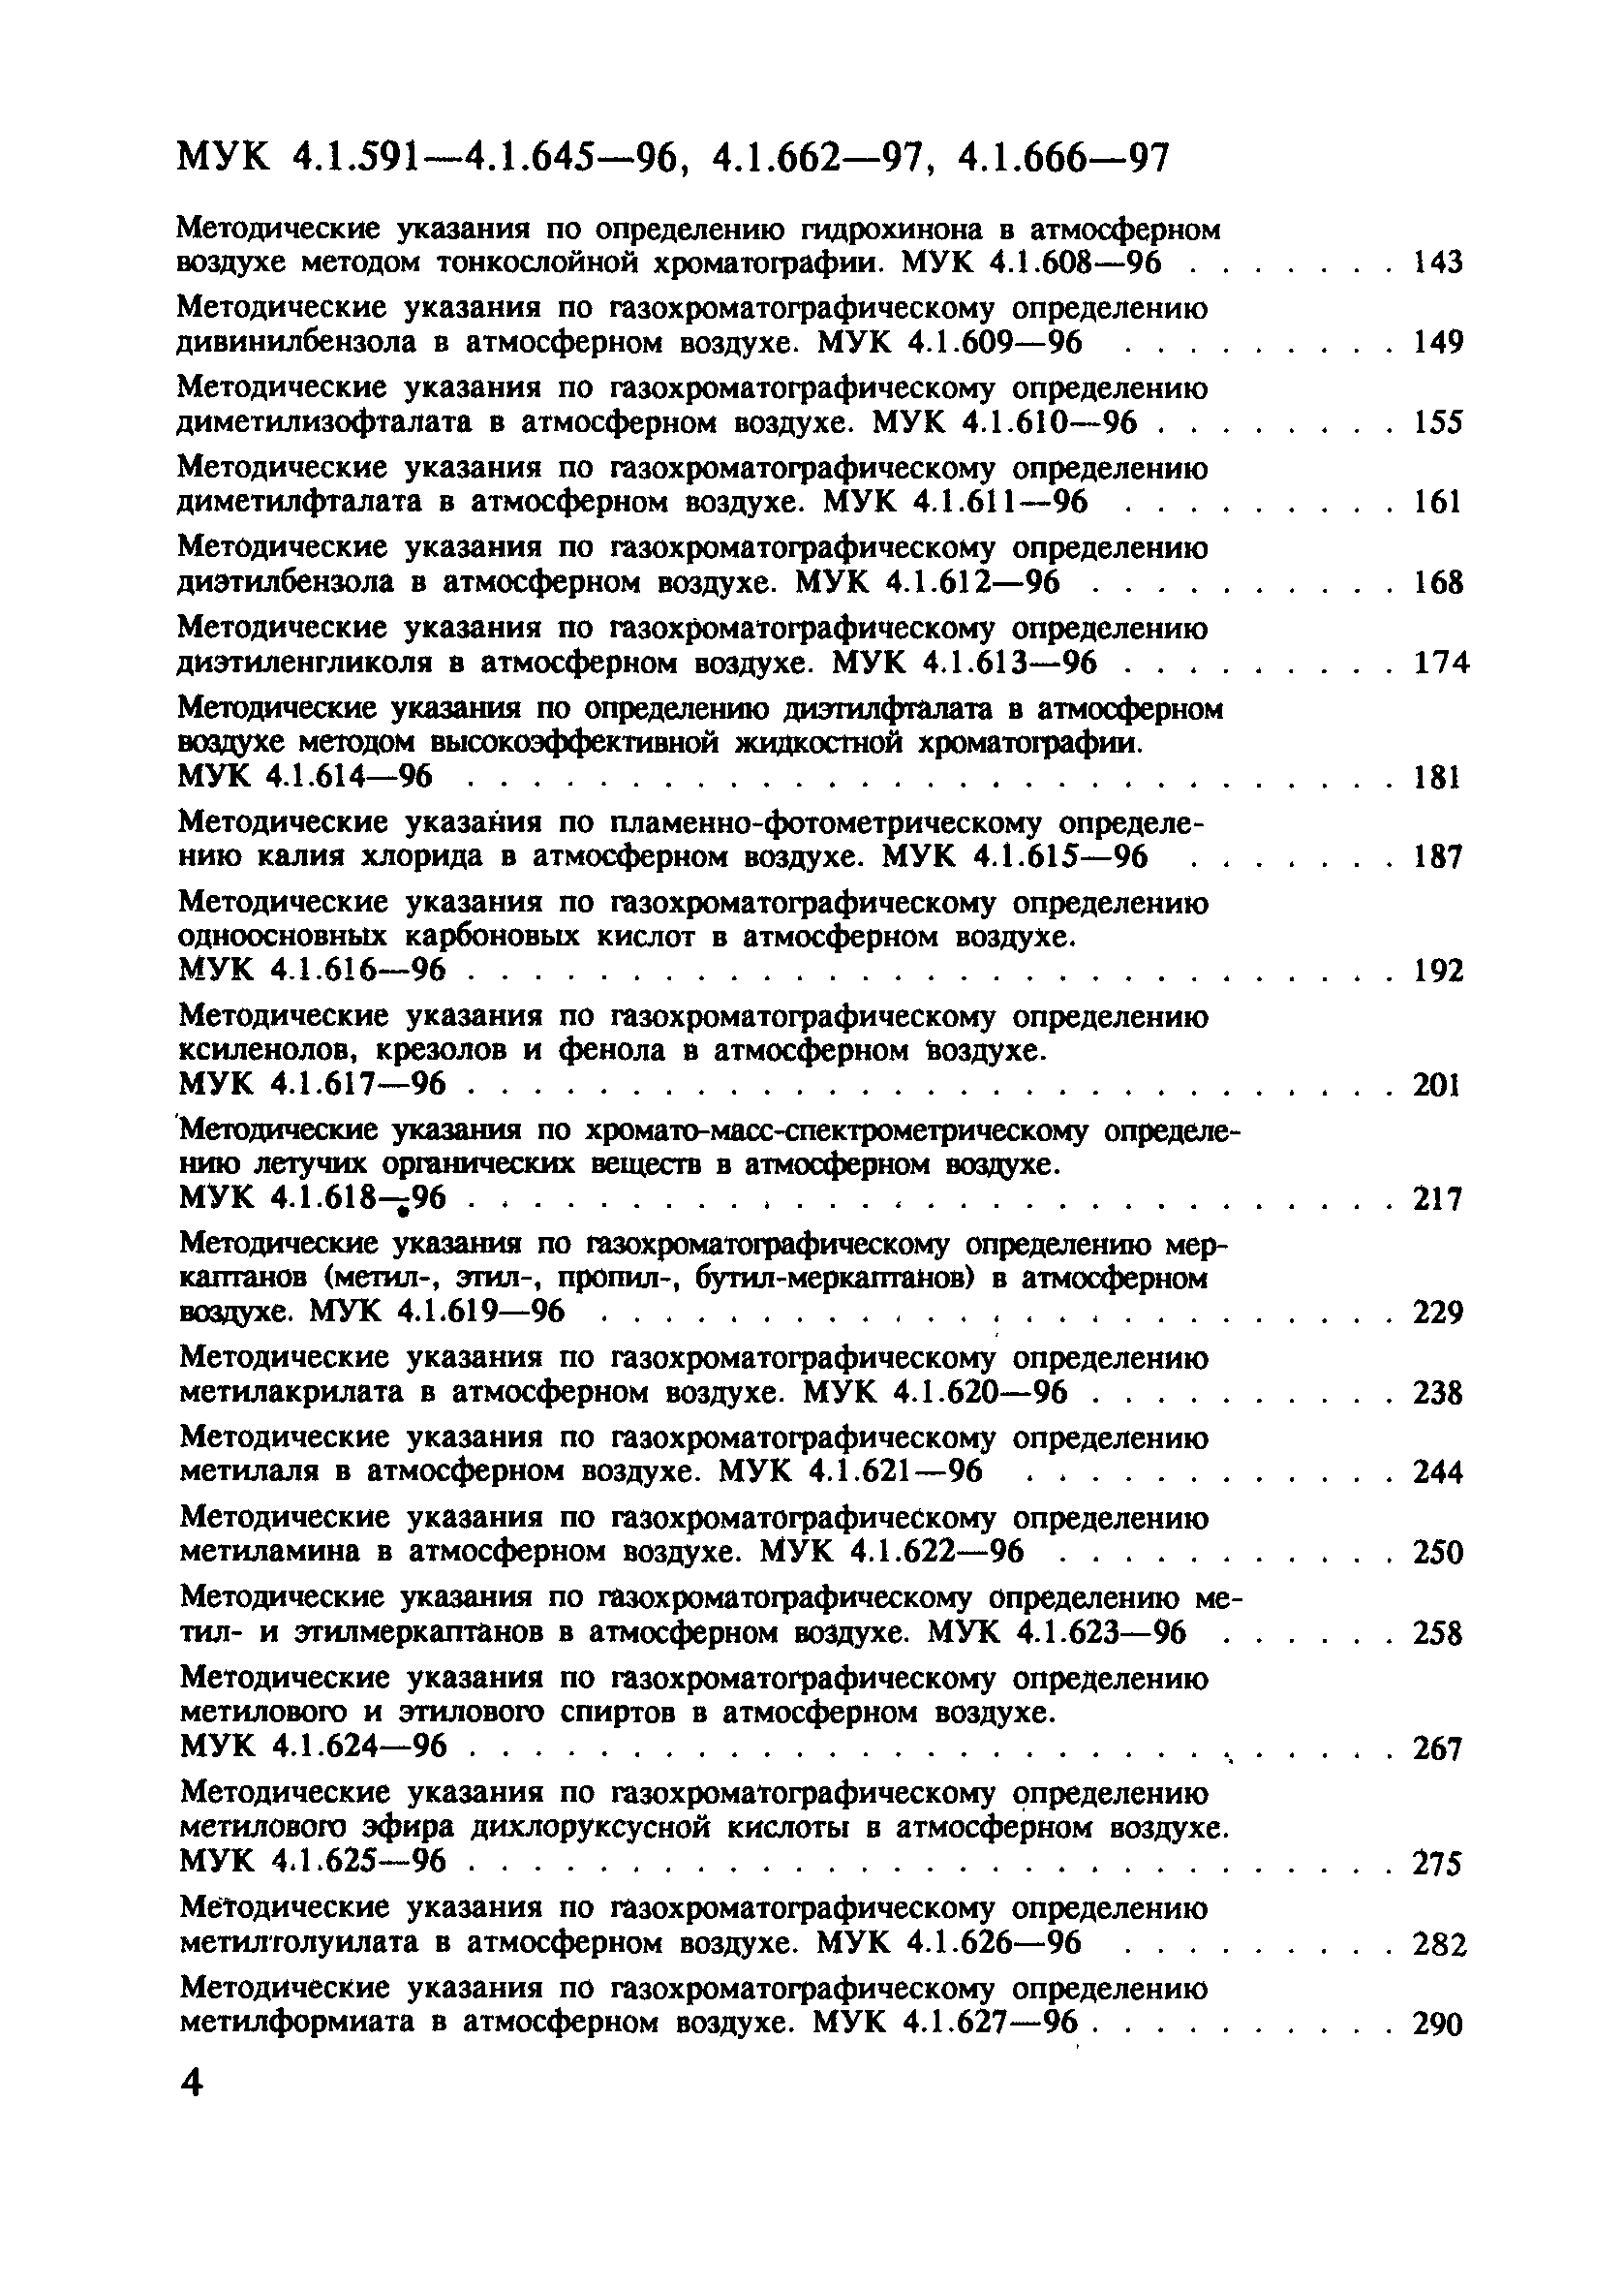 МУК 4.1.598-96